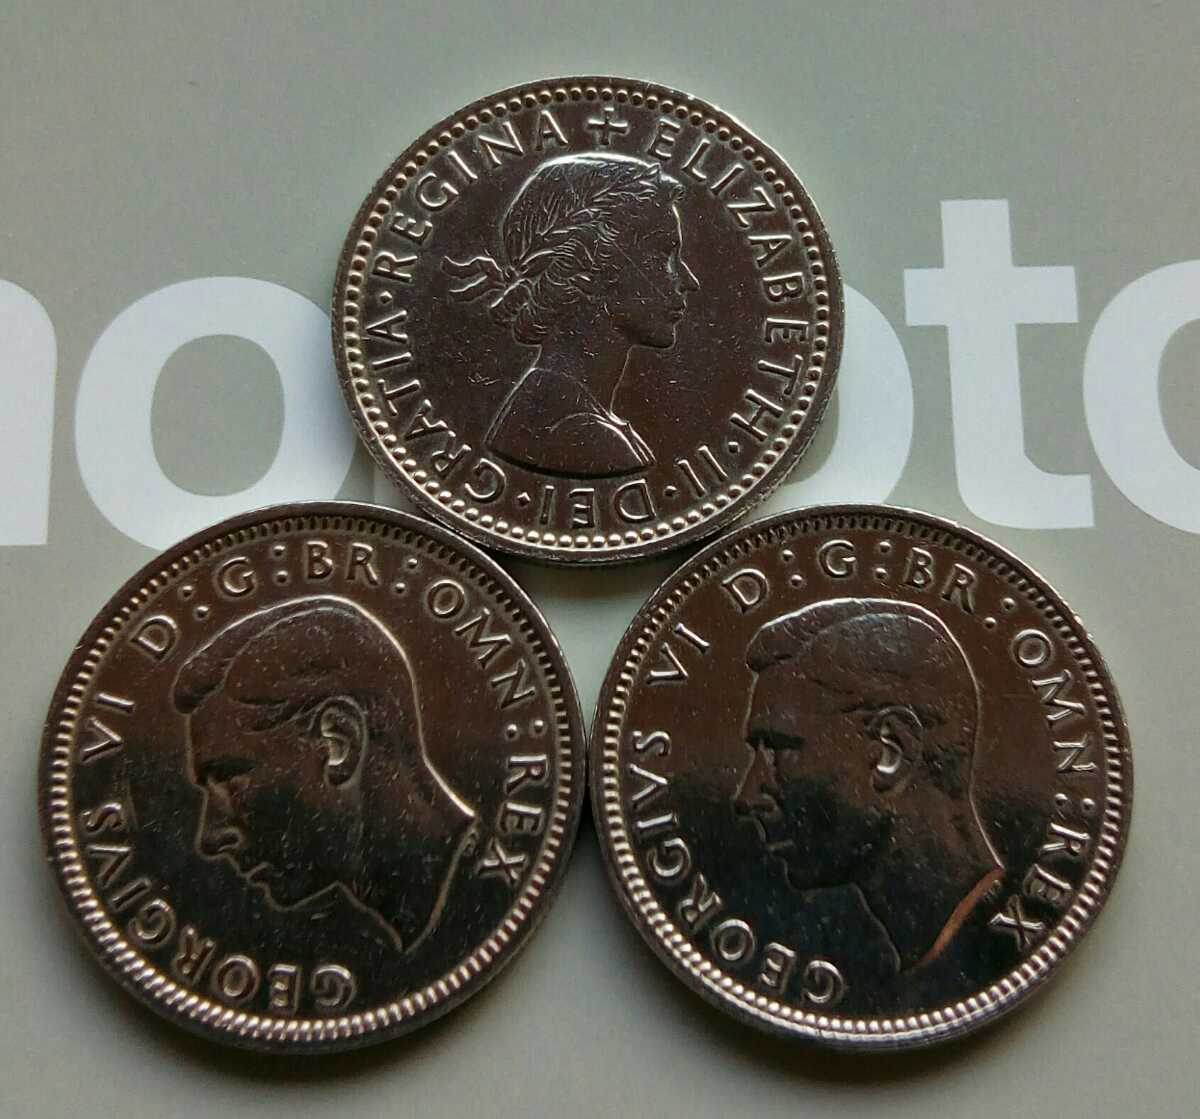 3コインセット1948年 1950年 1955年 アンティーク イギリス ラッキー6ペンス ジョージVI エリザベス女王 ブリティッシュ英国の古銭 美品_画像2